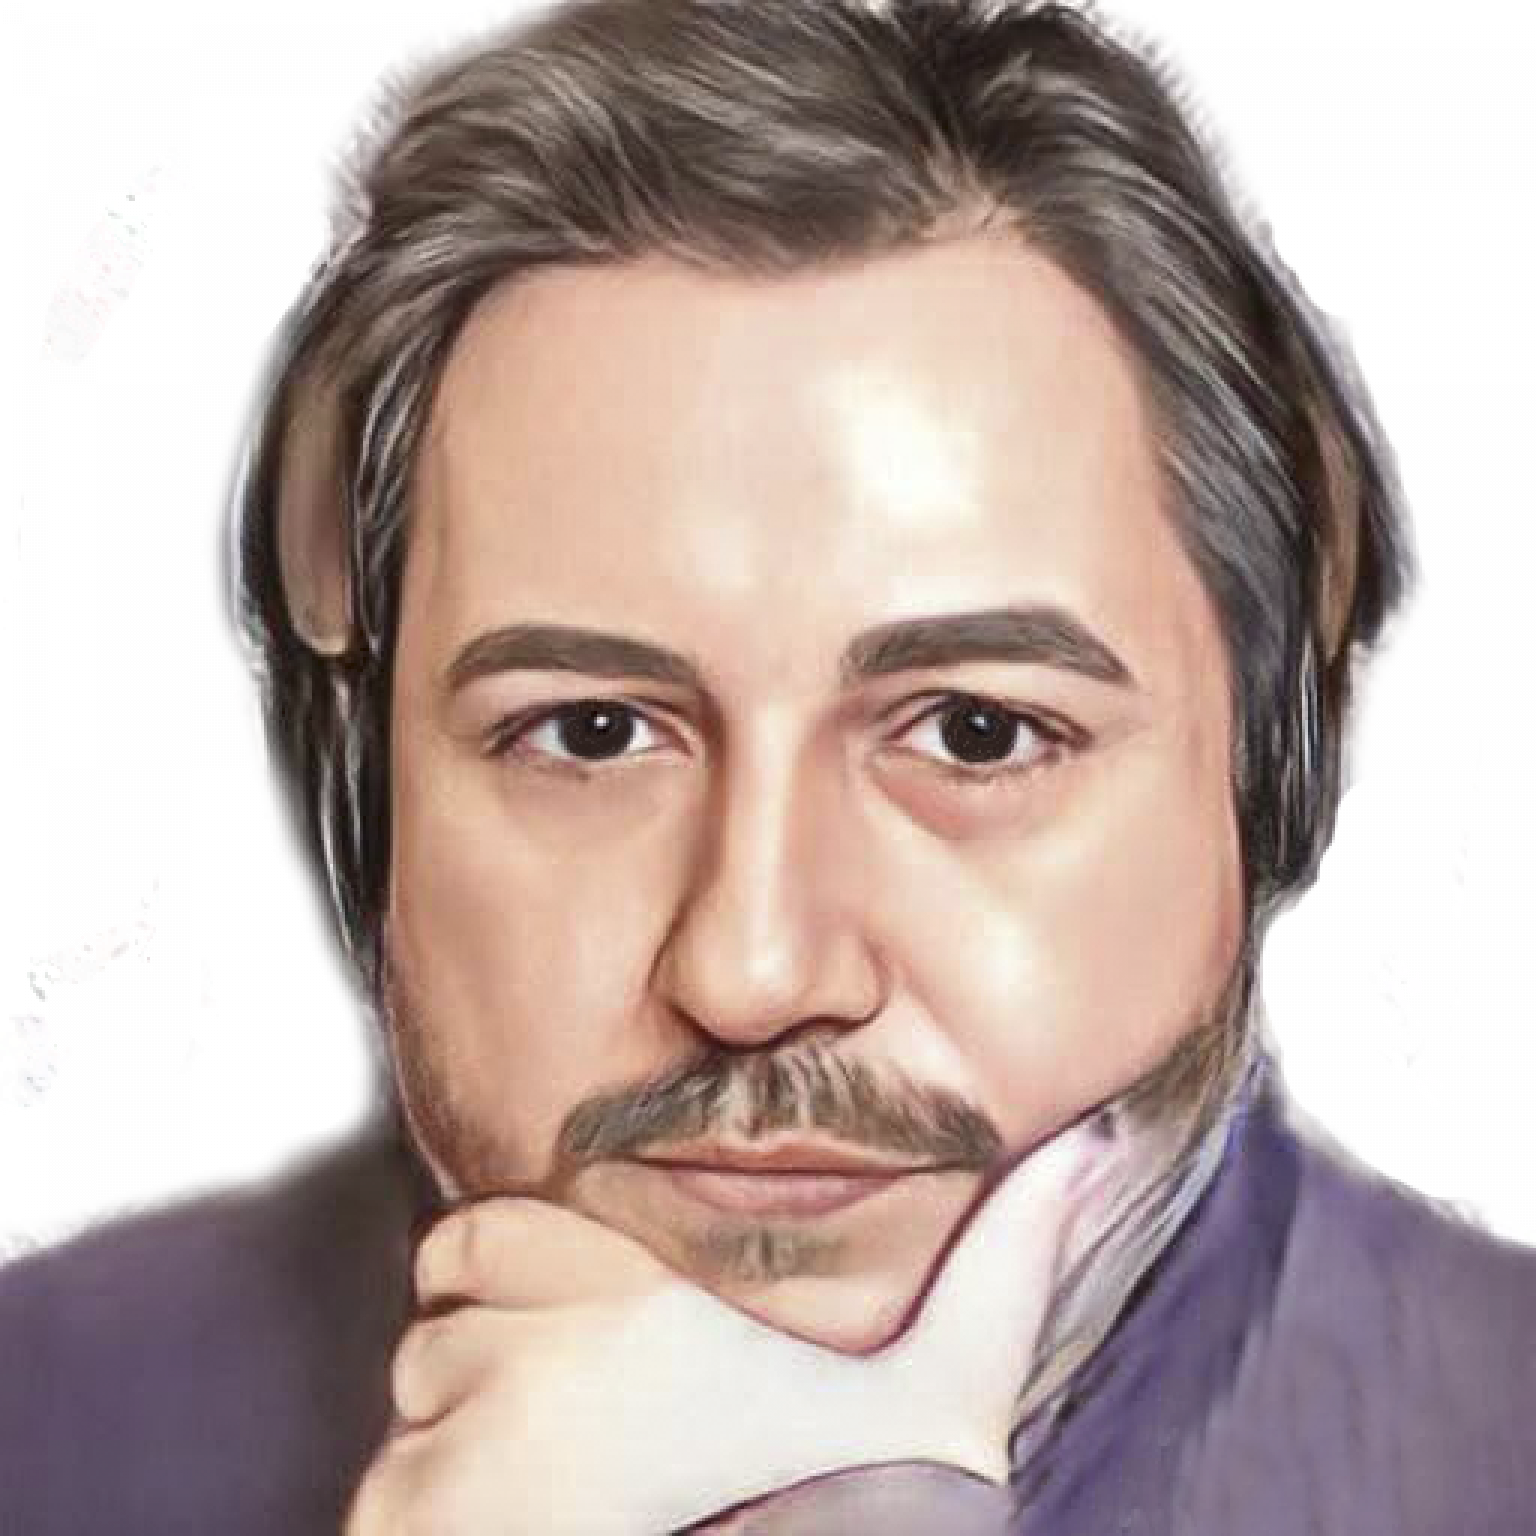 Julián Macías Tovar: Experto en análisis de redes, fundador de Pandemia Digital, presentador del programa de Twitch y analista de Pandemia Digital.